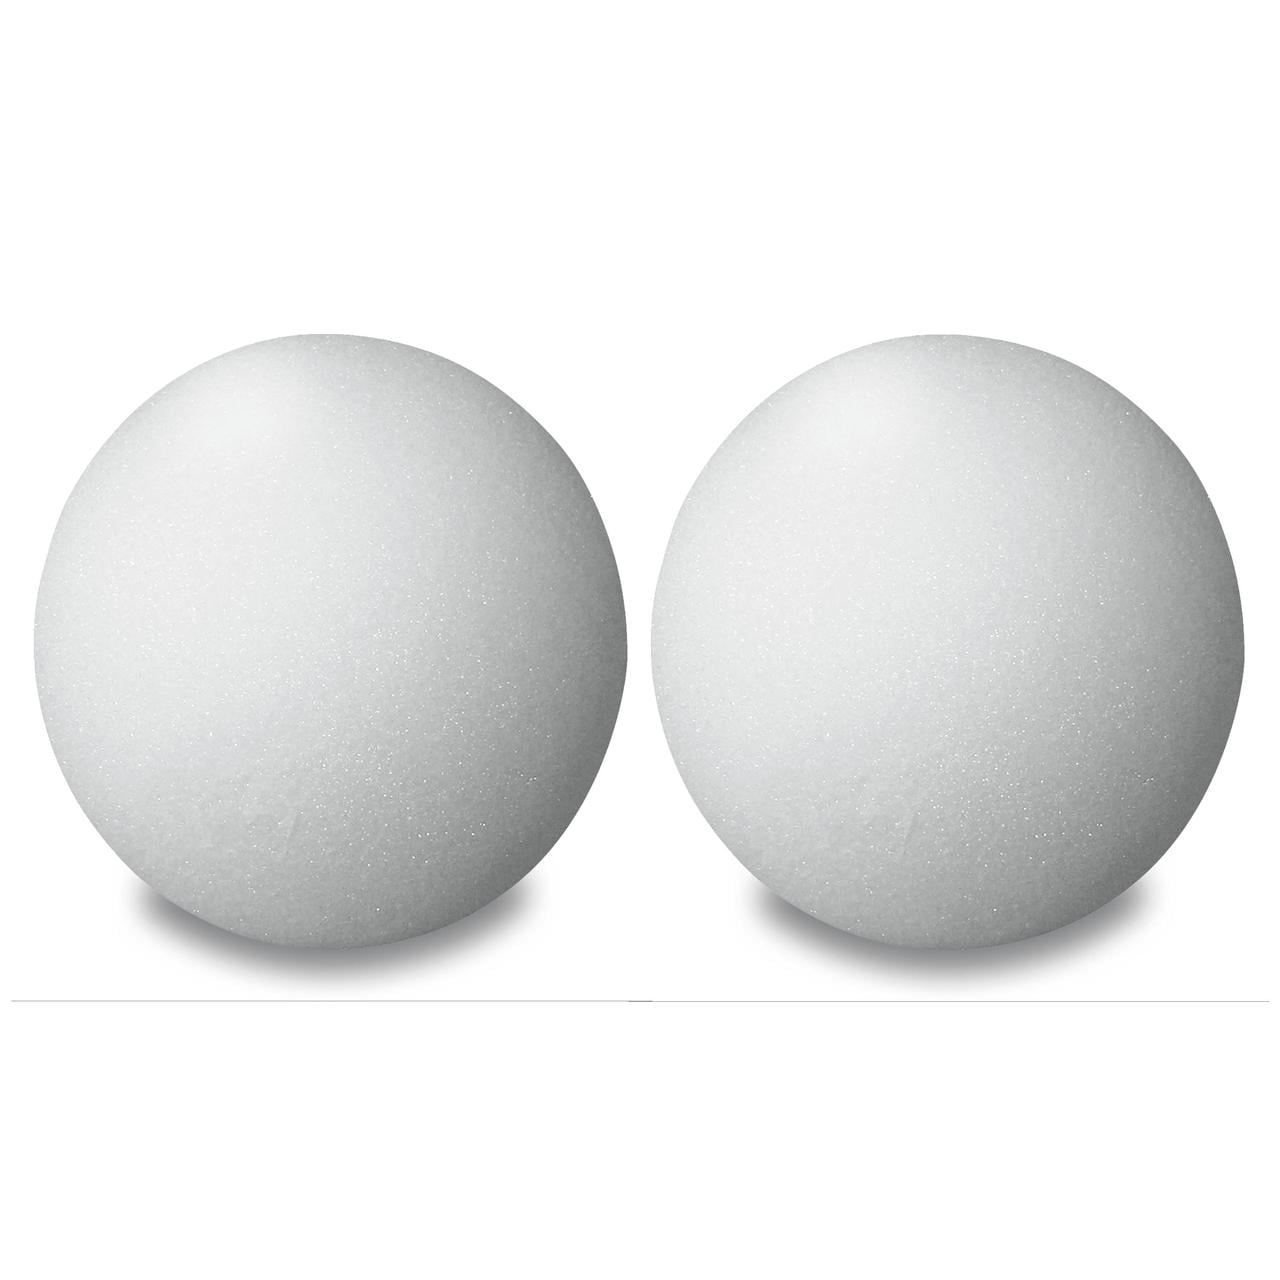 Quantity 2 Cups/20oz size 3-4 Mm Tiny Styrofoam Ballsstyrofoam Balls for  Slime, Styrofoam Craft, Styrofoam Snow, White Styrofoam Balls. 